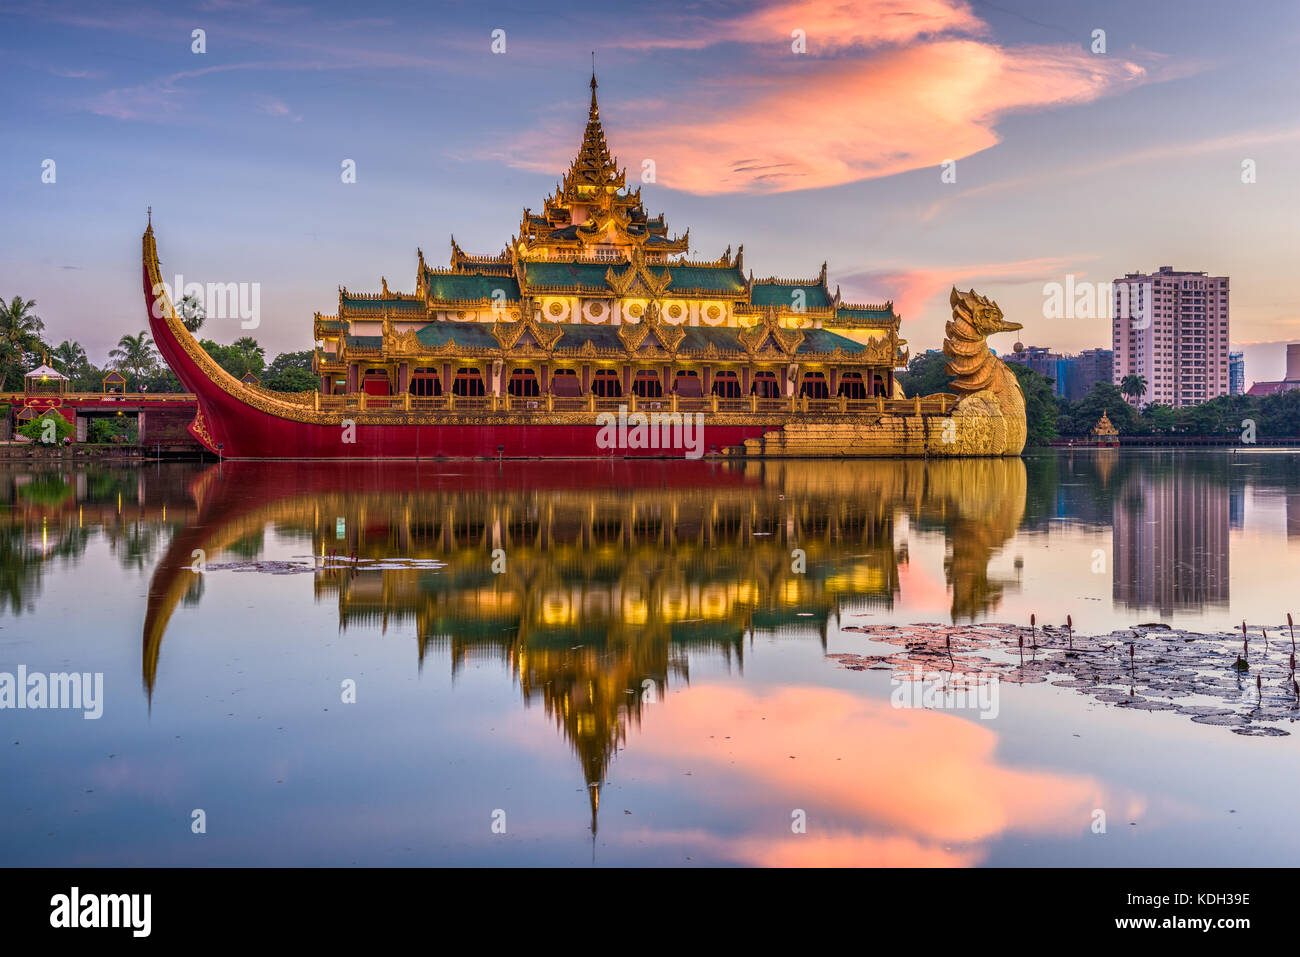 Yangon, Myanmar an Karaweik-halle folgen in Kandawgyi Palace Royal Lake. Stockfoto